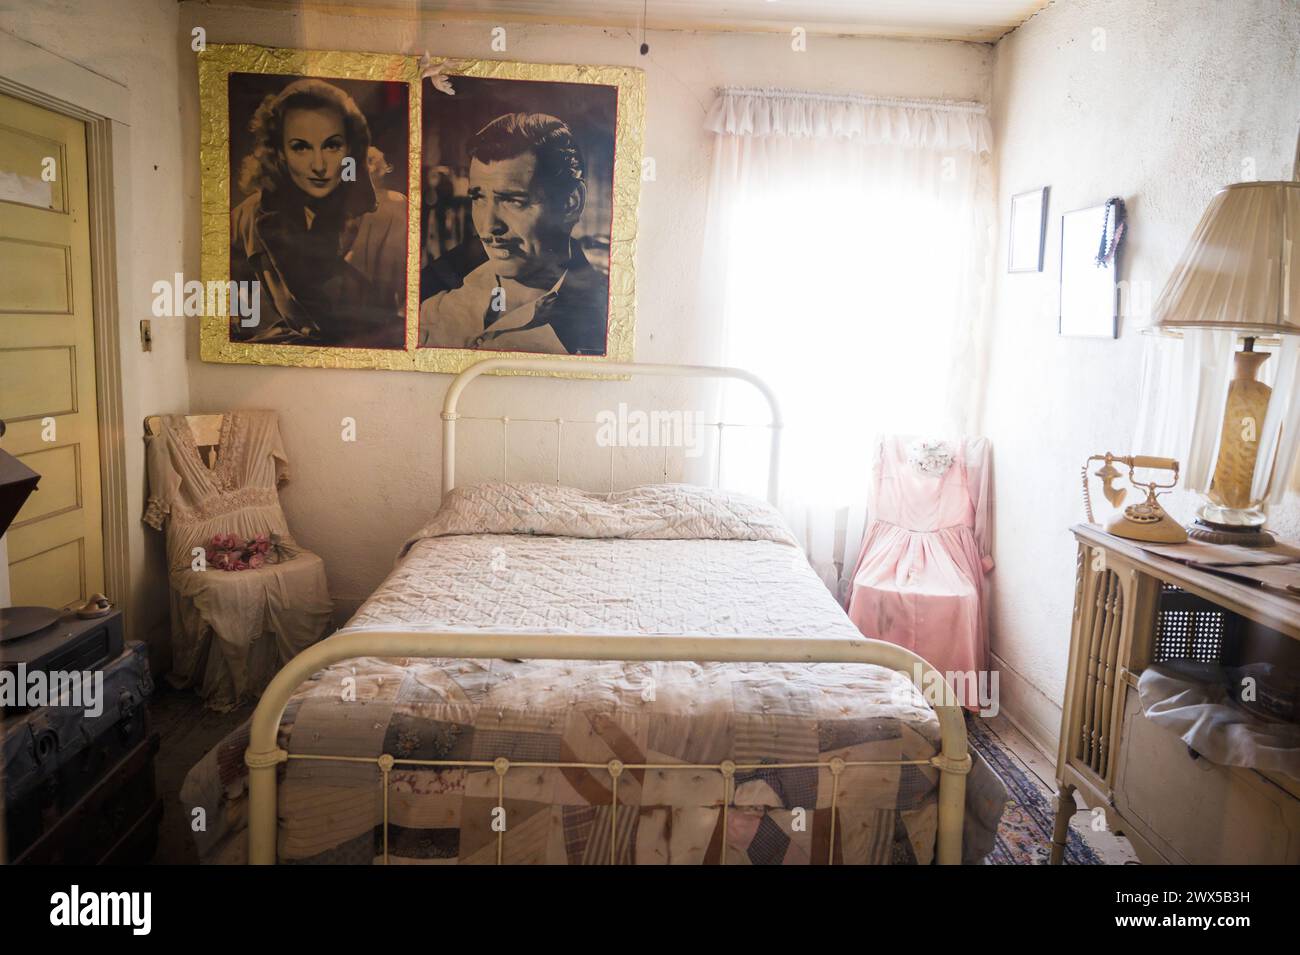 La camera dove le vecchie star di Hollywood Clark Gable e Carole Lombard trascorrevano la loro luna di miele all'Oatman Hotel. La storica città mineraria dell'oro di Oatman Foto Stock